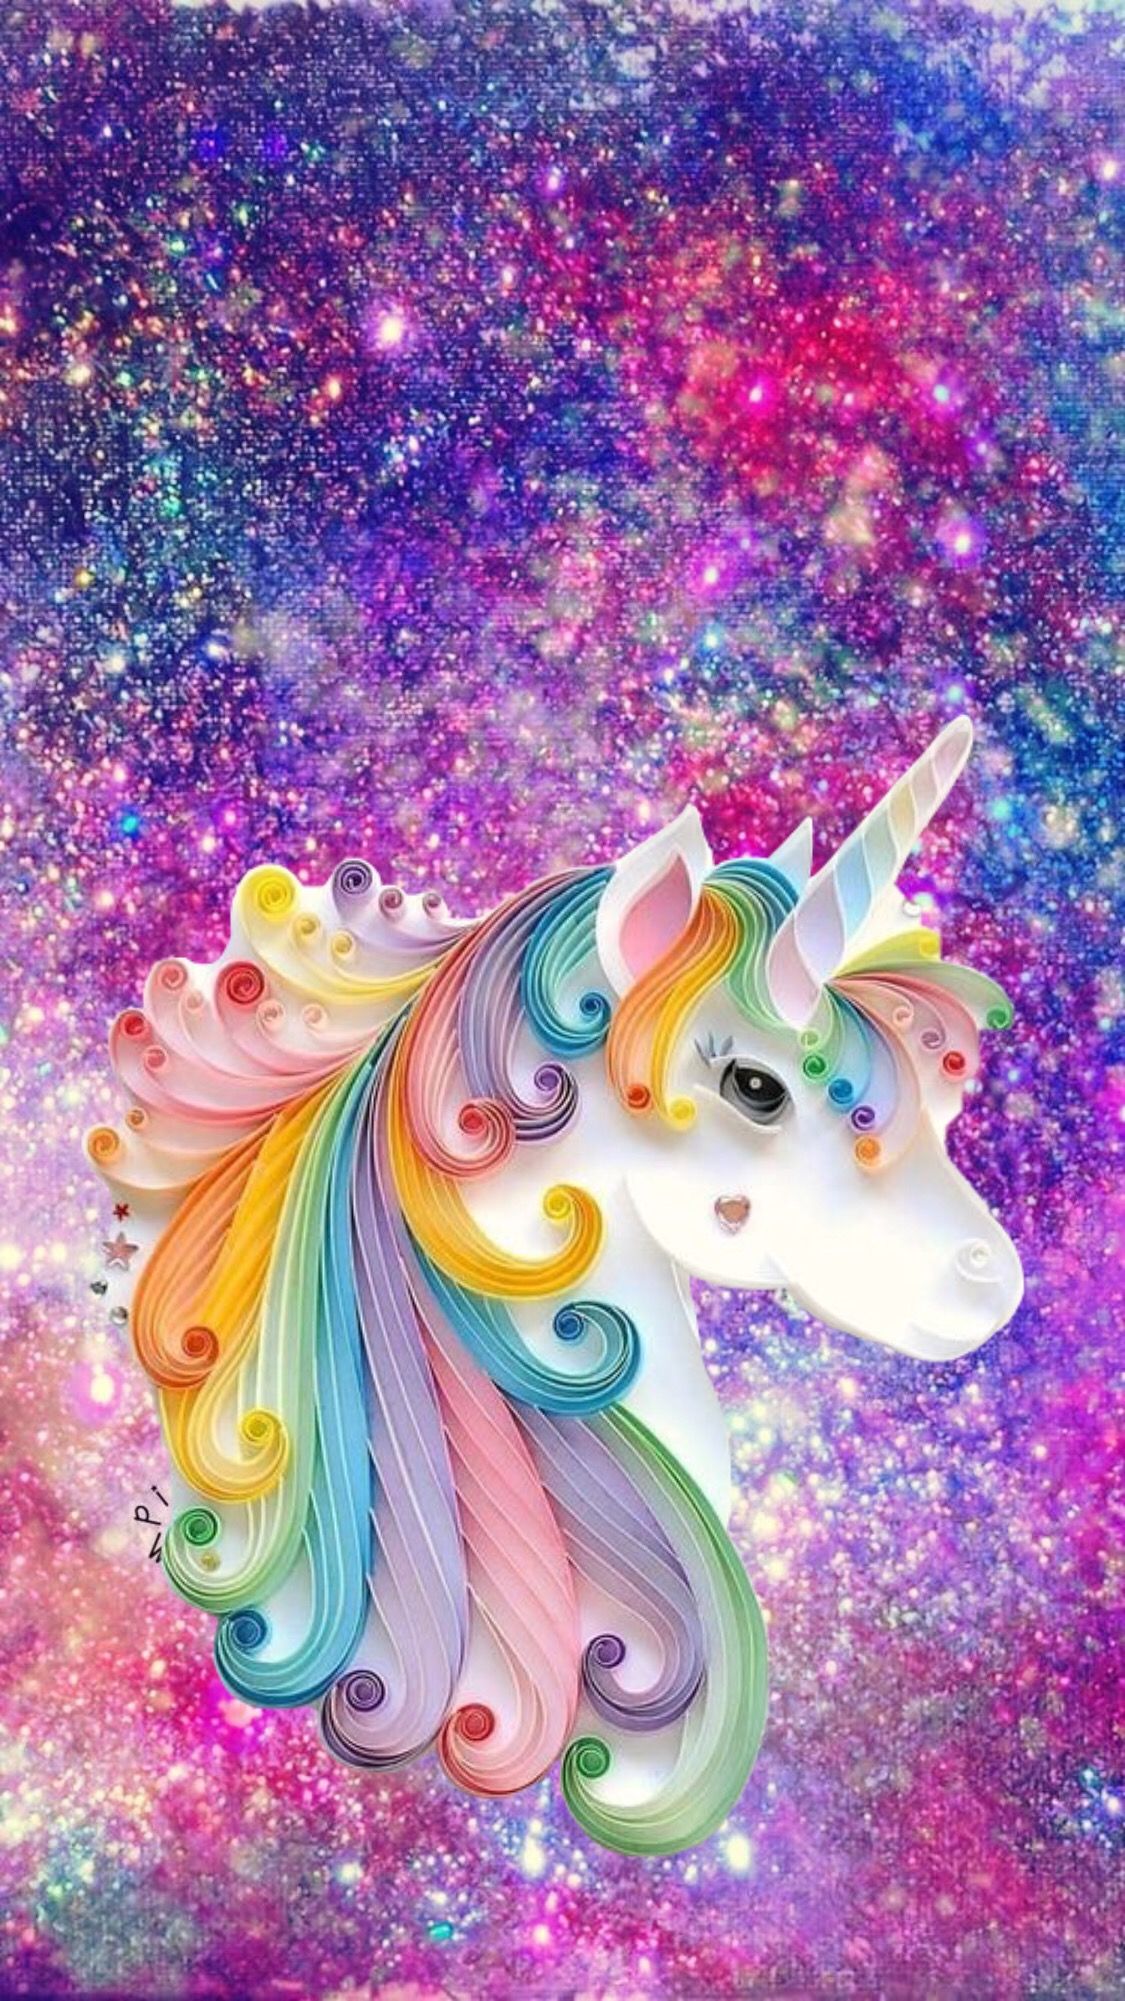 Unicorn with sparkle background. Unicorn wallpaper, Unicorn wallpaper cute, Unicorn picture